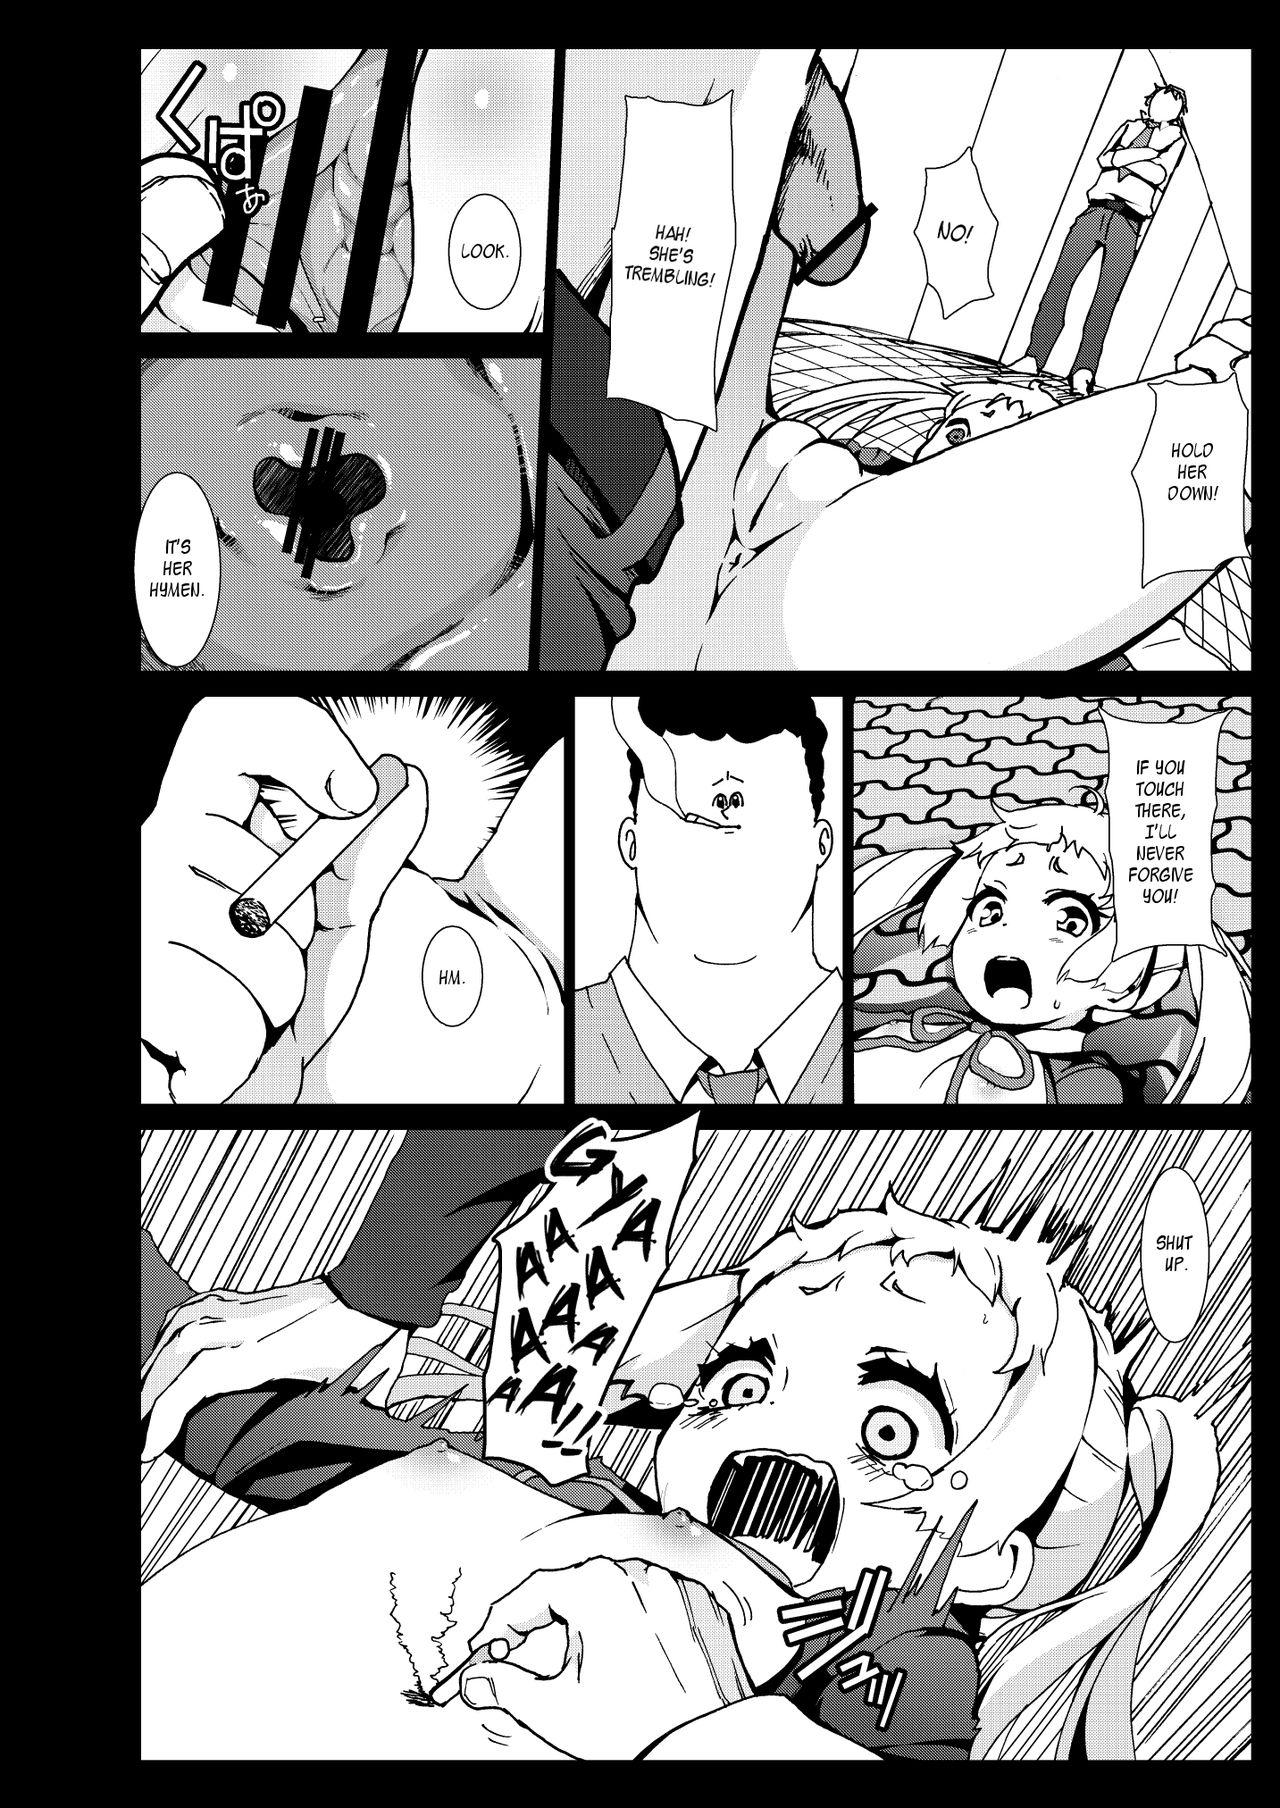 Passionate Warae yo Dekomori... Chuunibyou demo Shojo Rape Shitai! | Smile Dekomori... Rape, Chuunibyou, and Other Delusions! - Chuunibyou demo koi ga shitai Head - Page 11